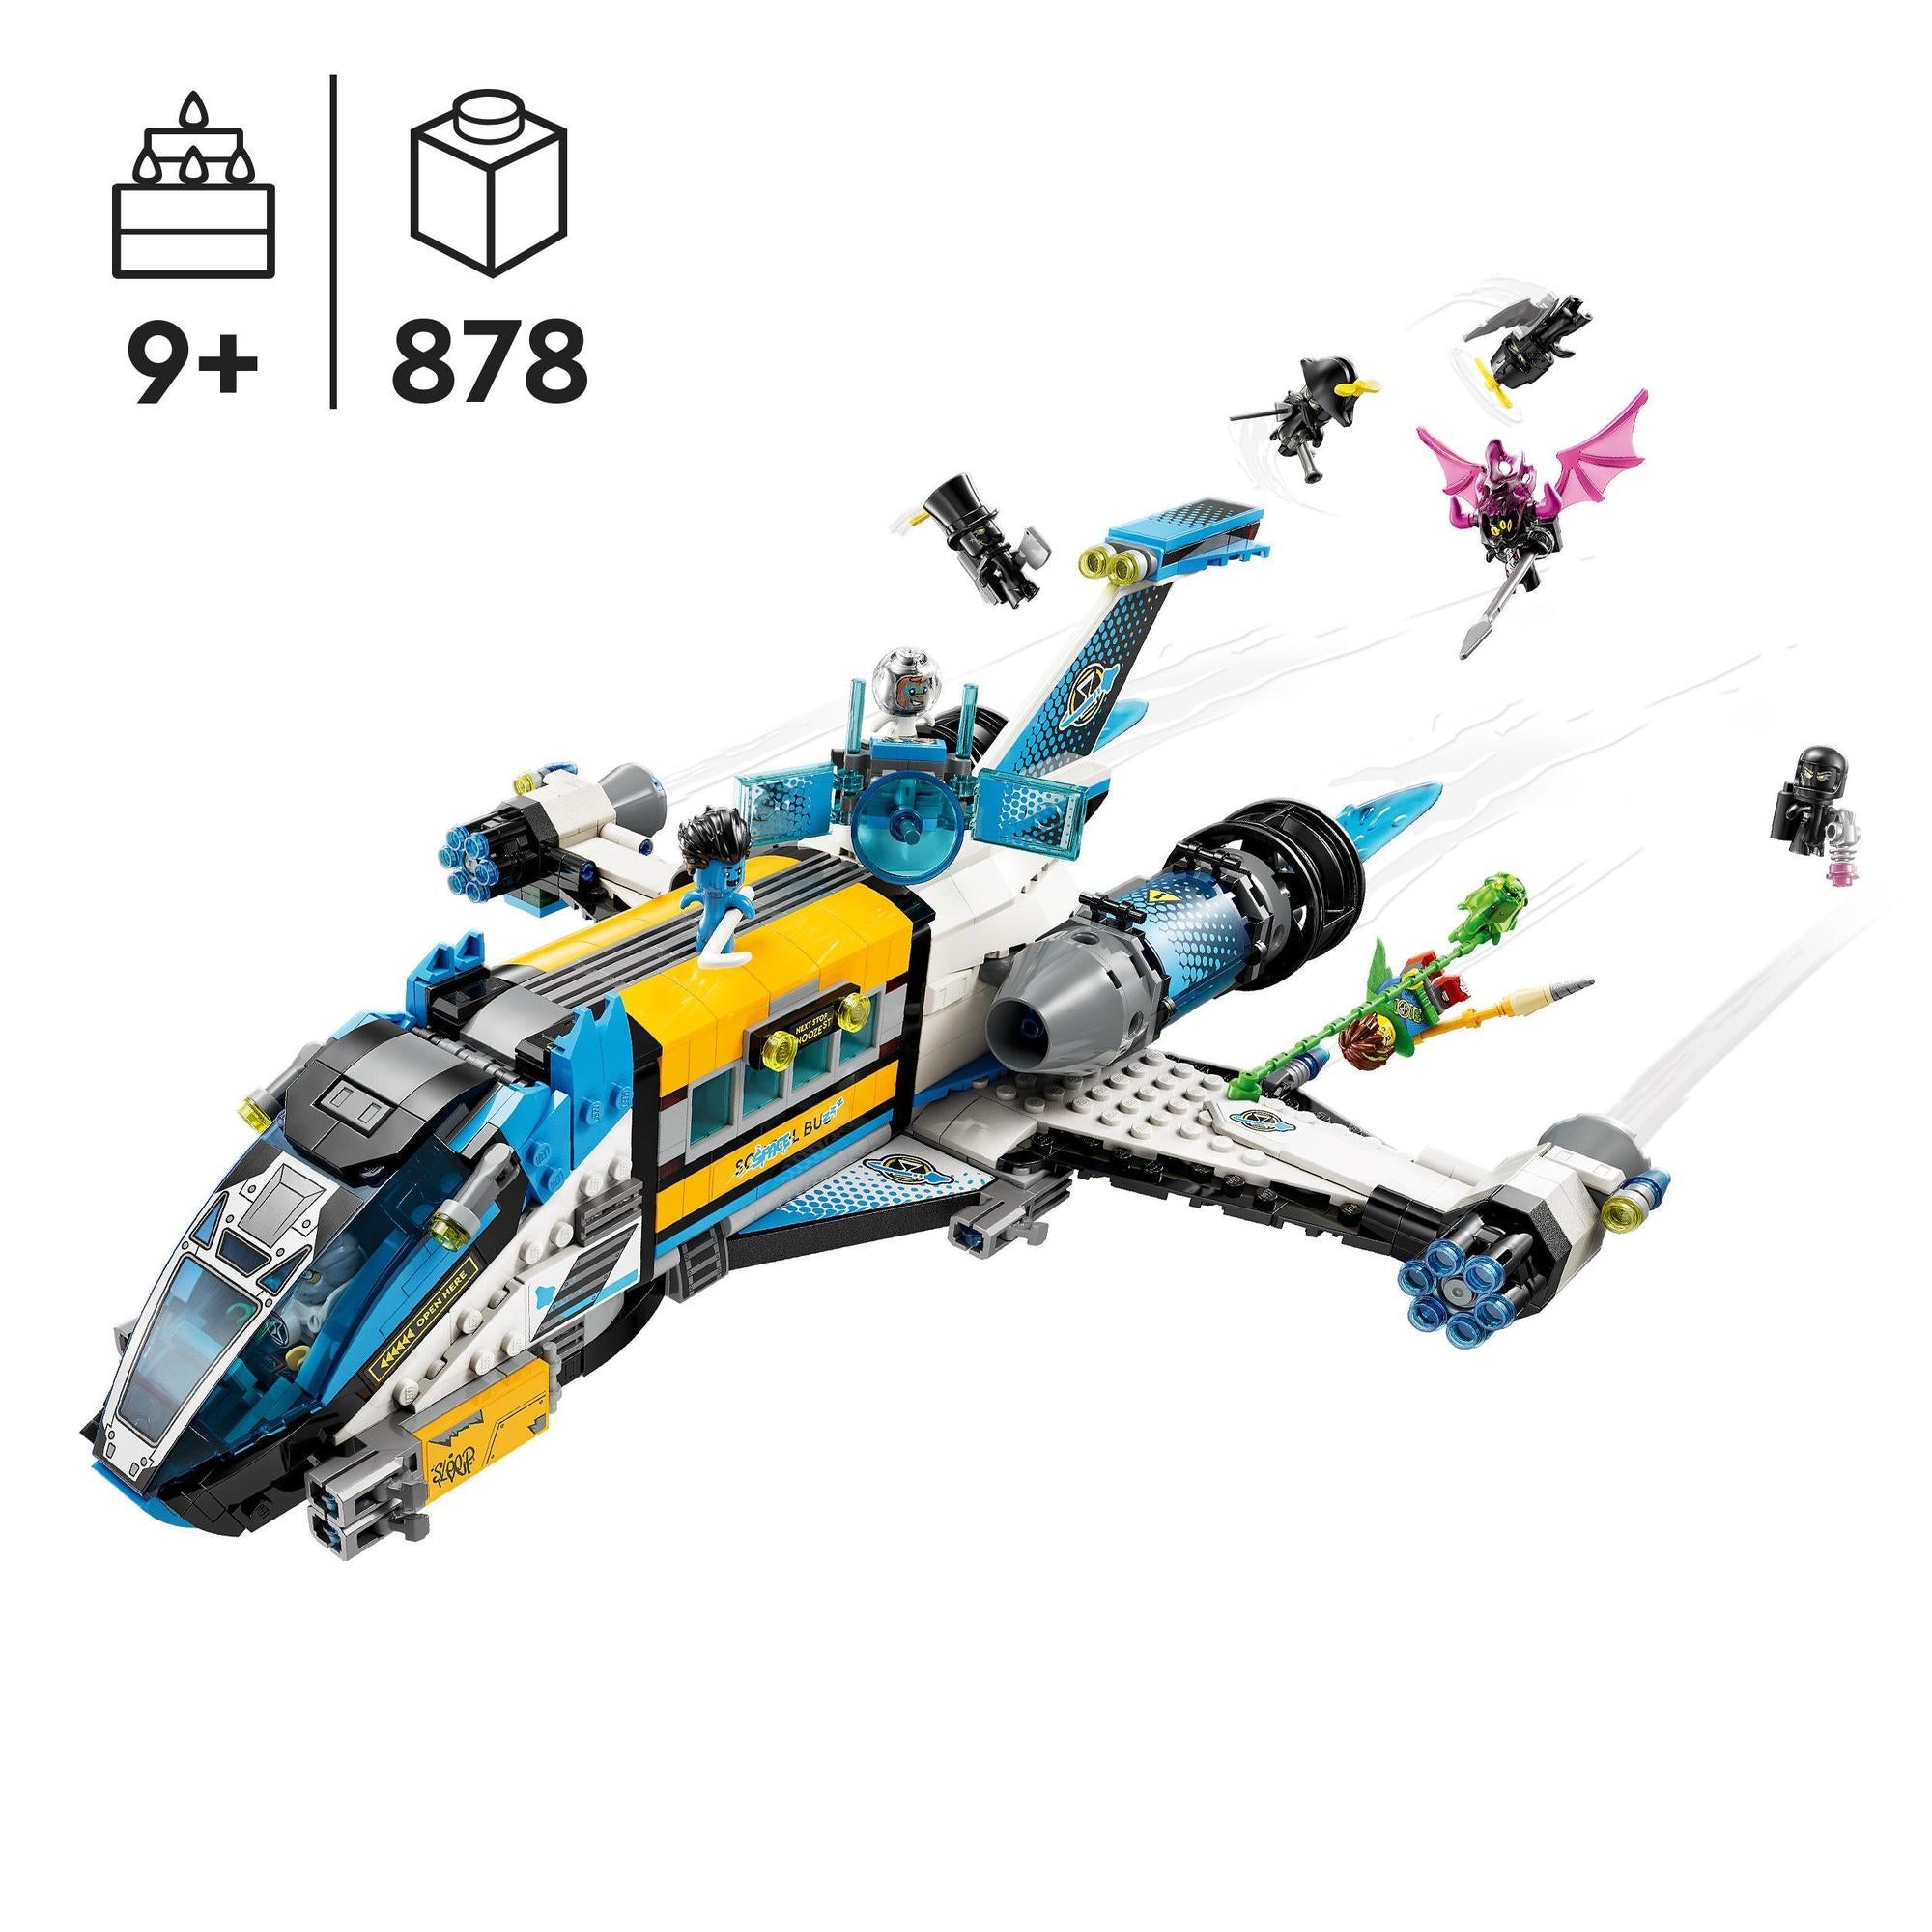 LEGO® | 71460 | Der Weltraumbus von Mr. Oz